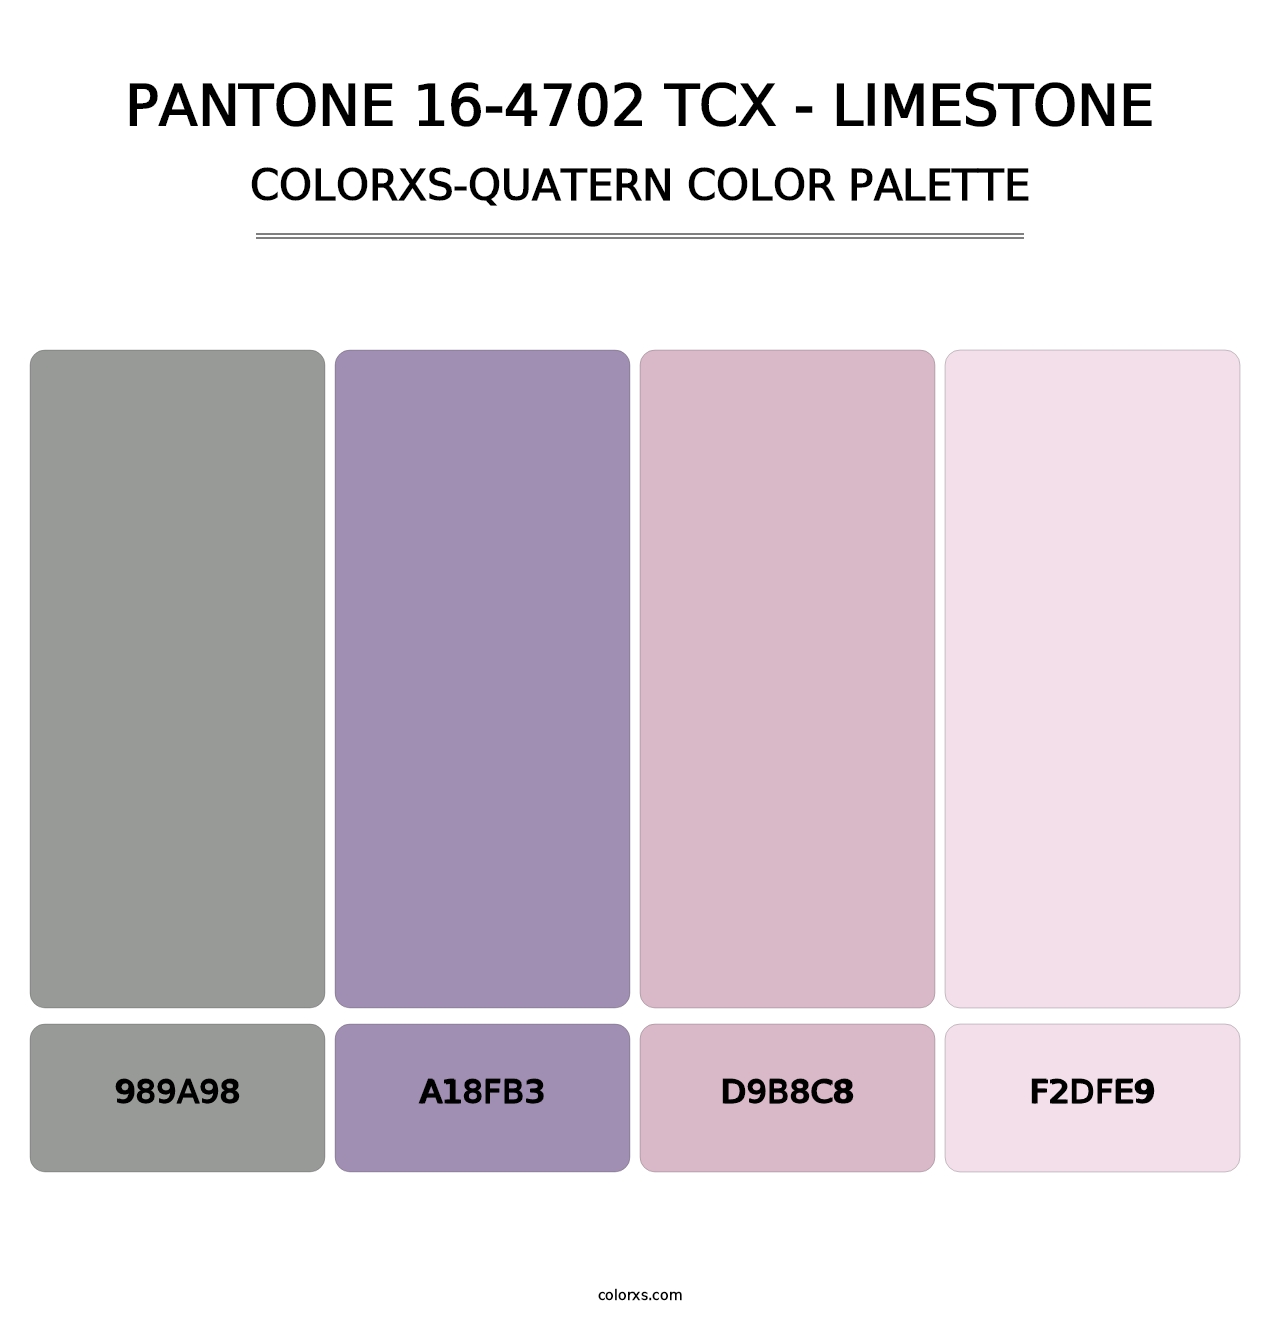 PANTONE 16-4702 TCX - Limestone - Colorxs Quatern Palette